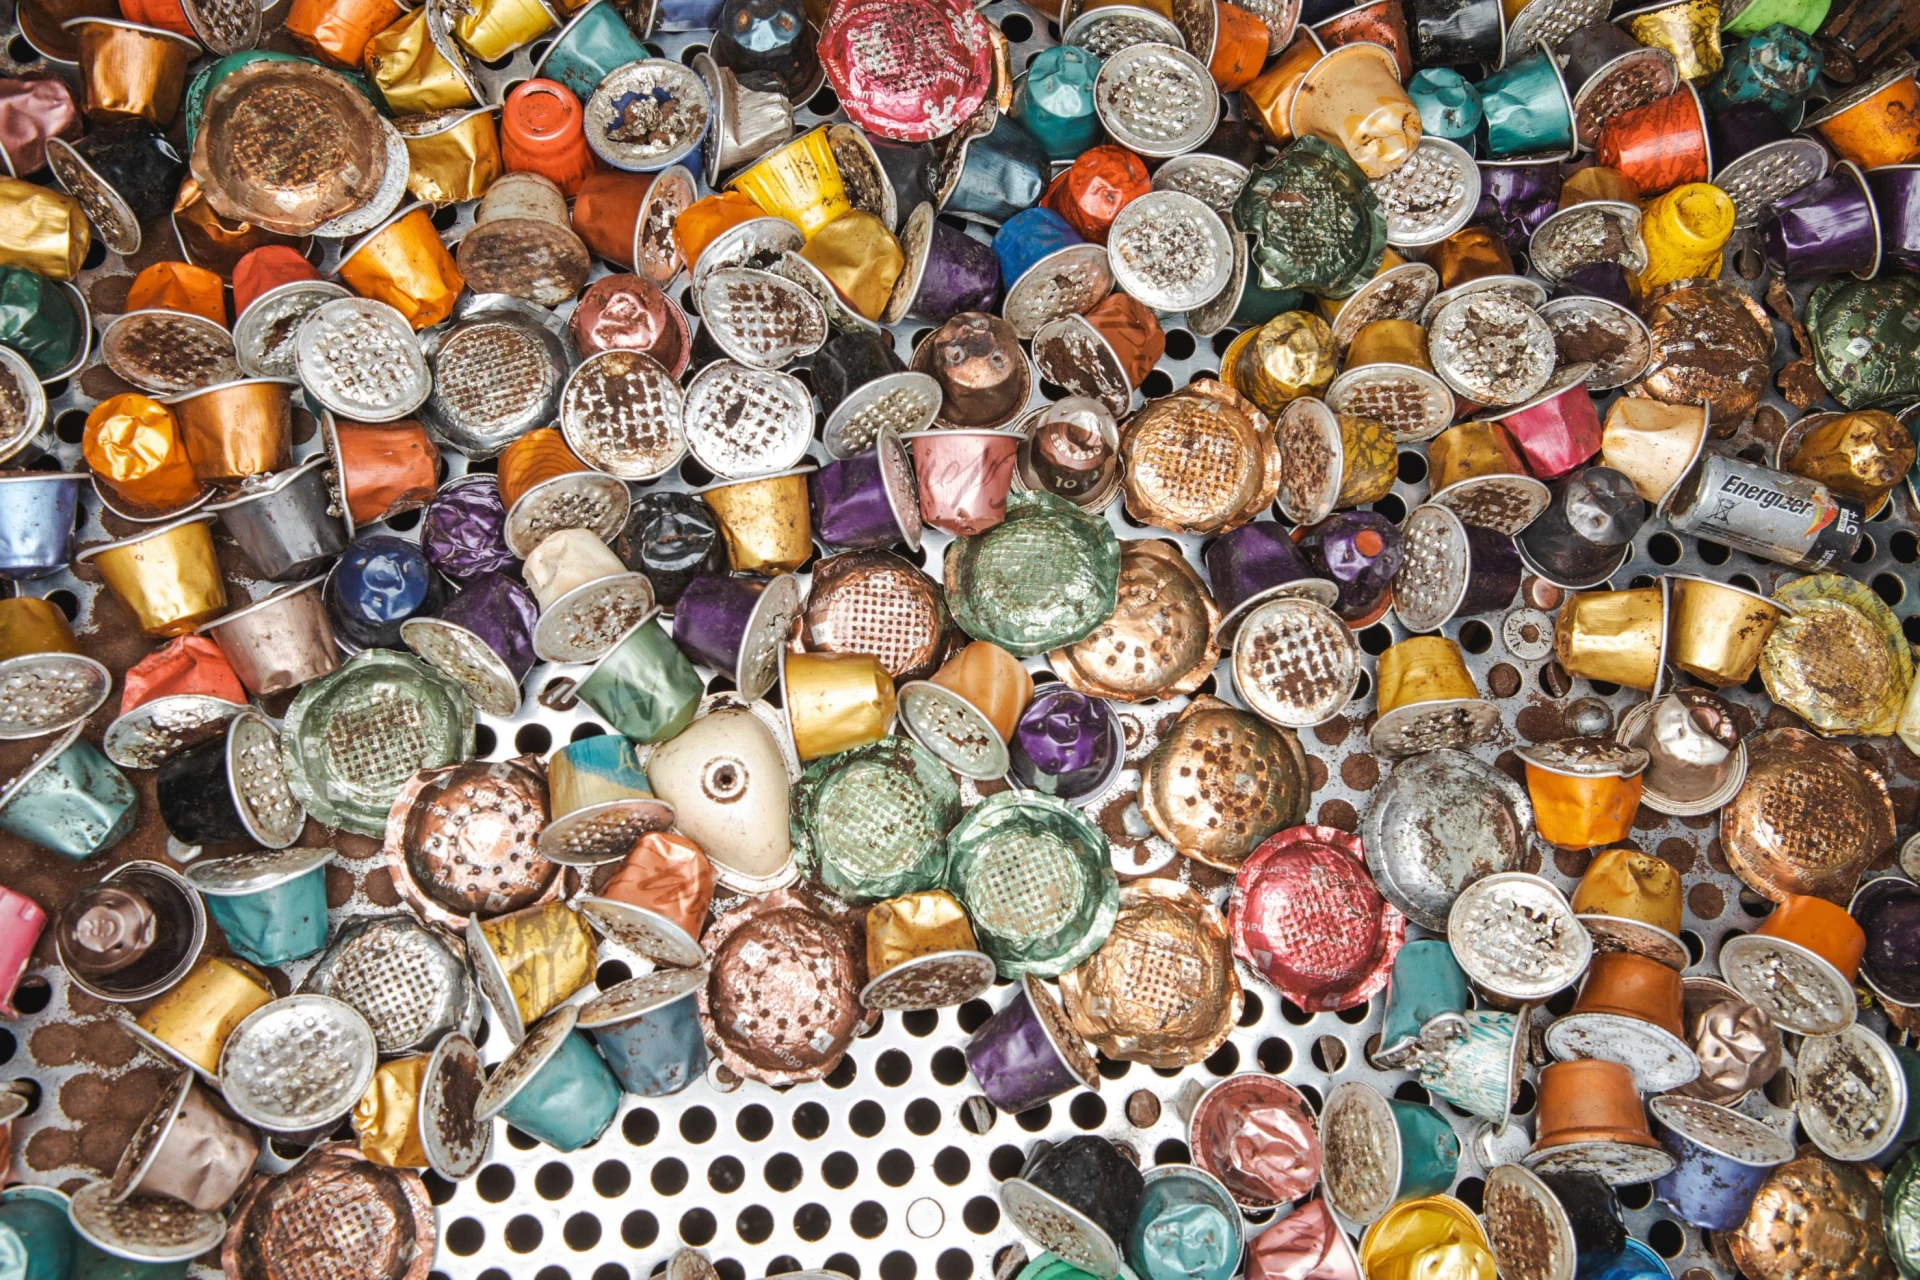 Le capsule usate (colorate) vengono separate dagli altri articoli mediante un dispositivo simile a un setaccio.